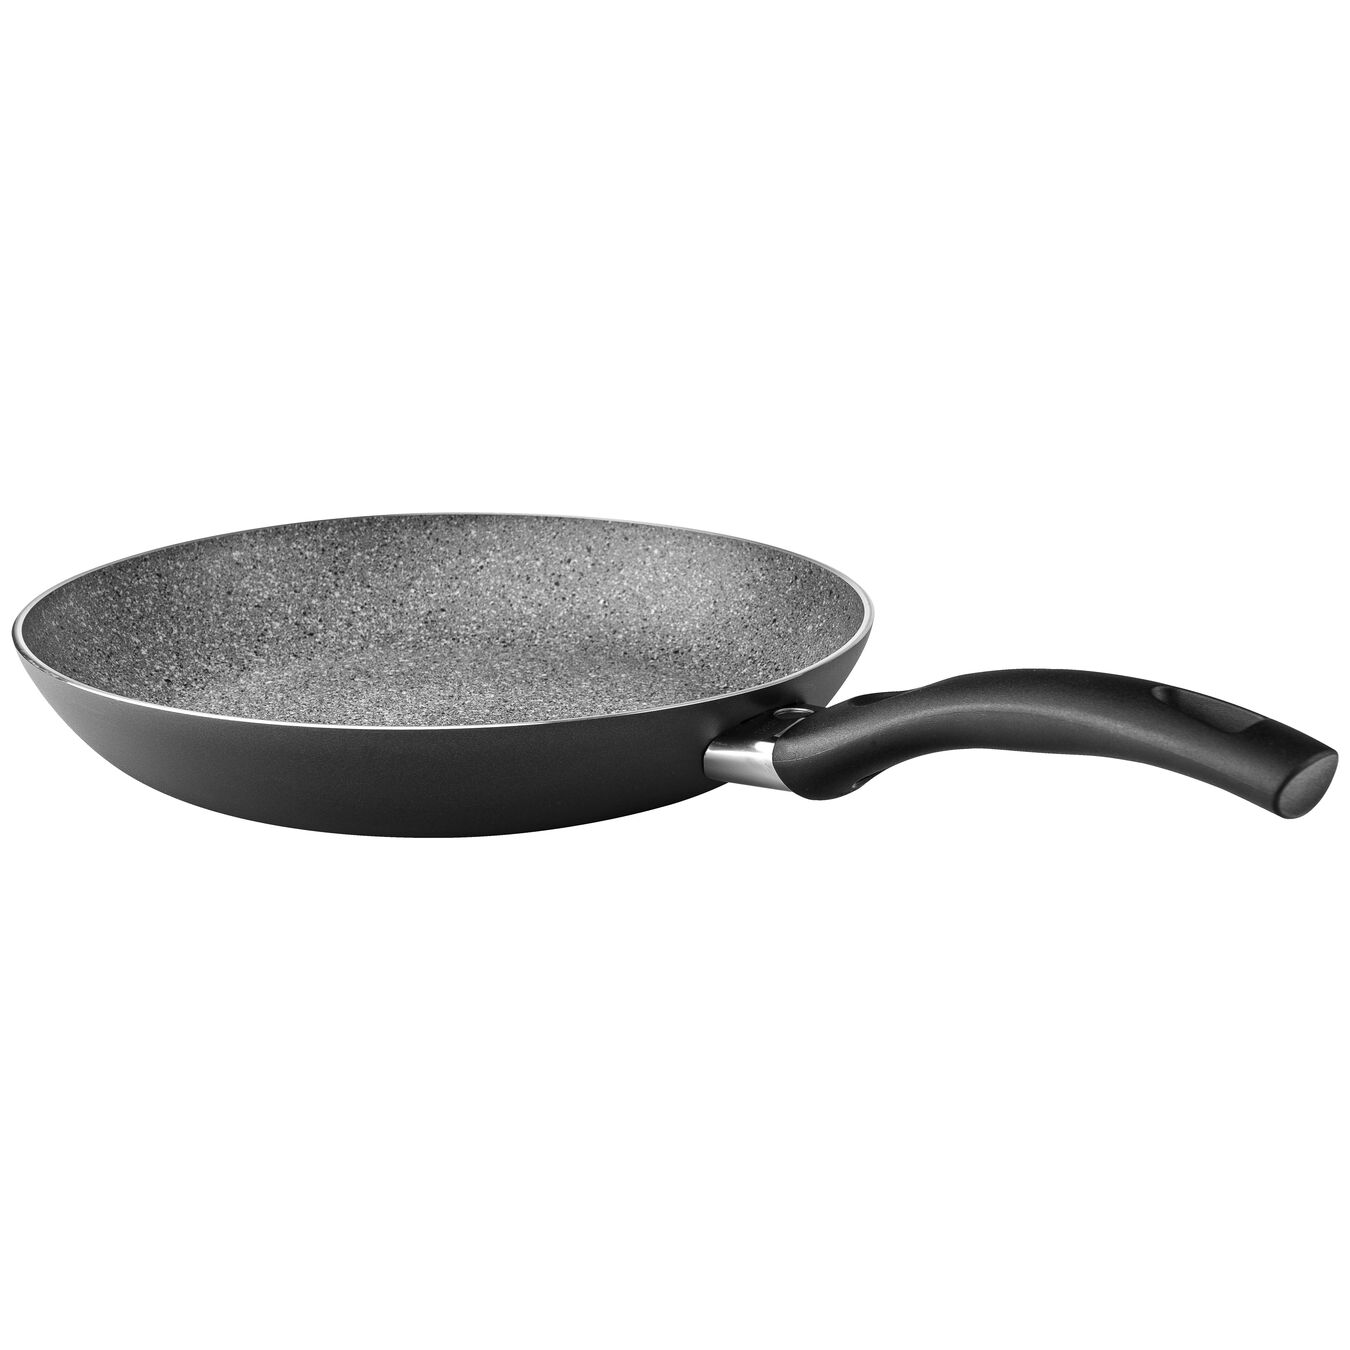 32 cm Aluminium Frying pan black,,large 2